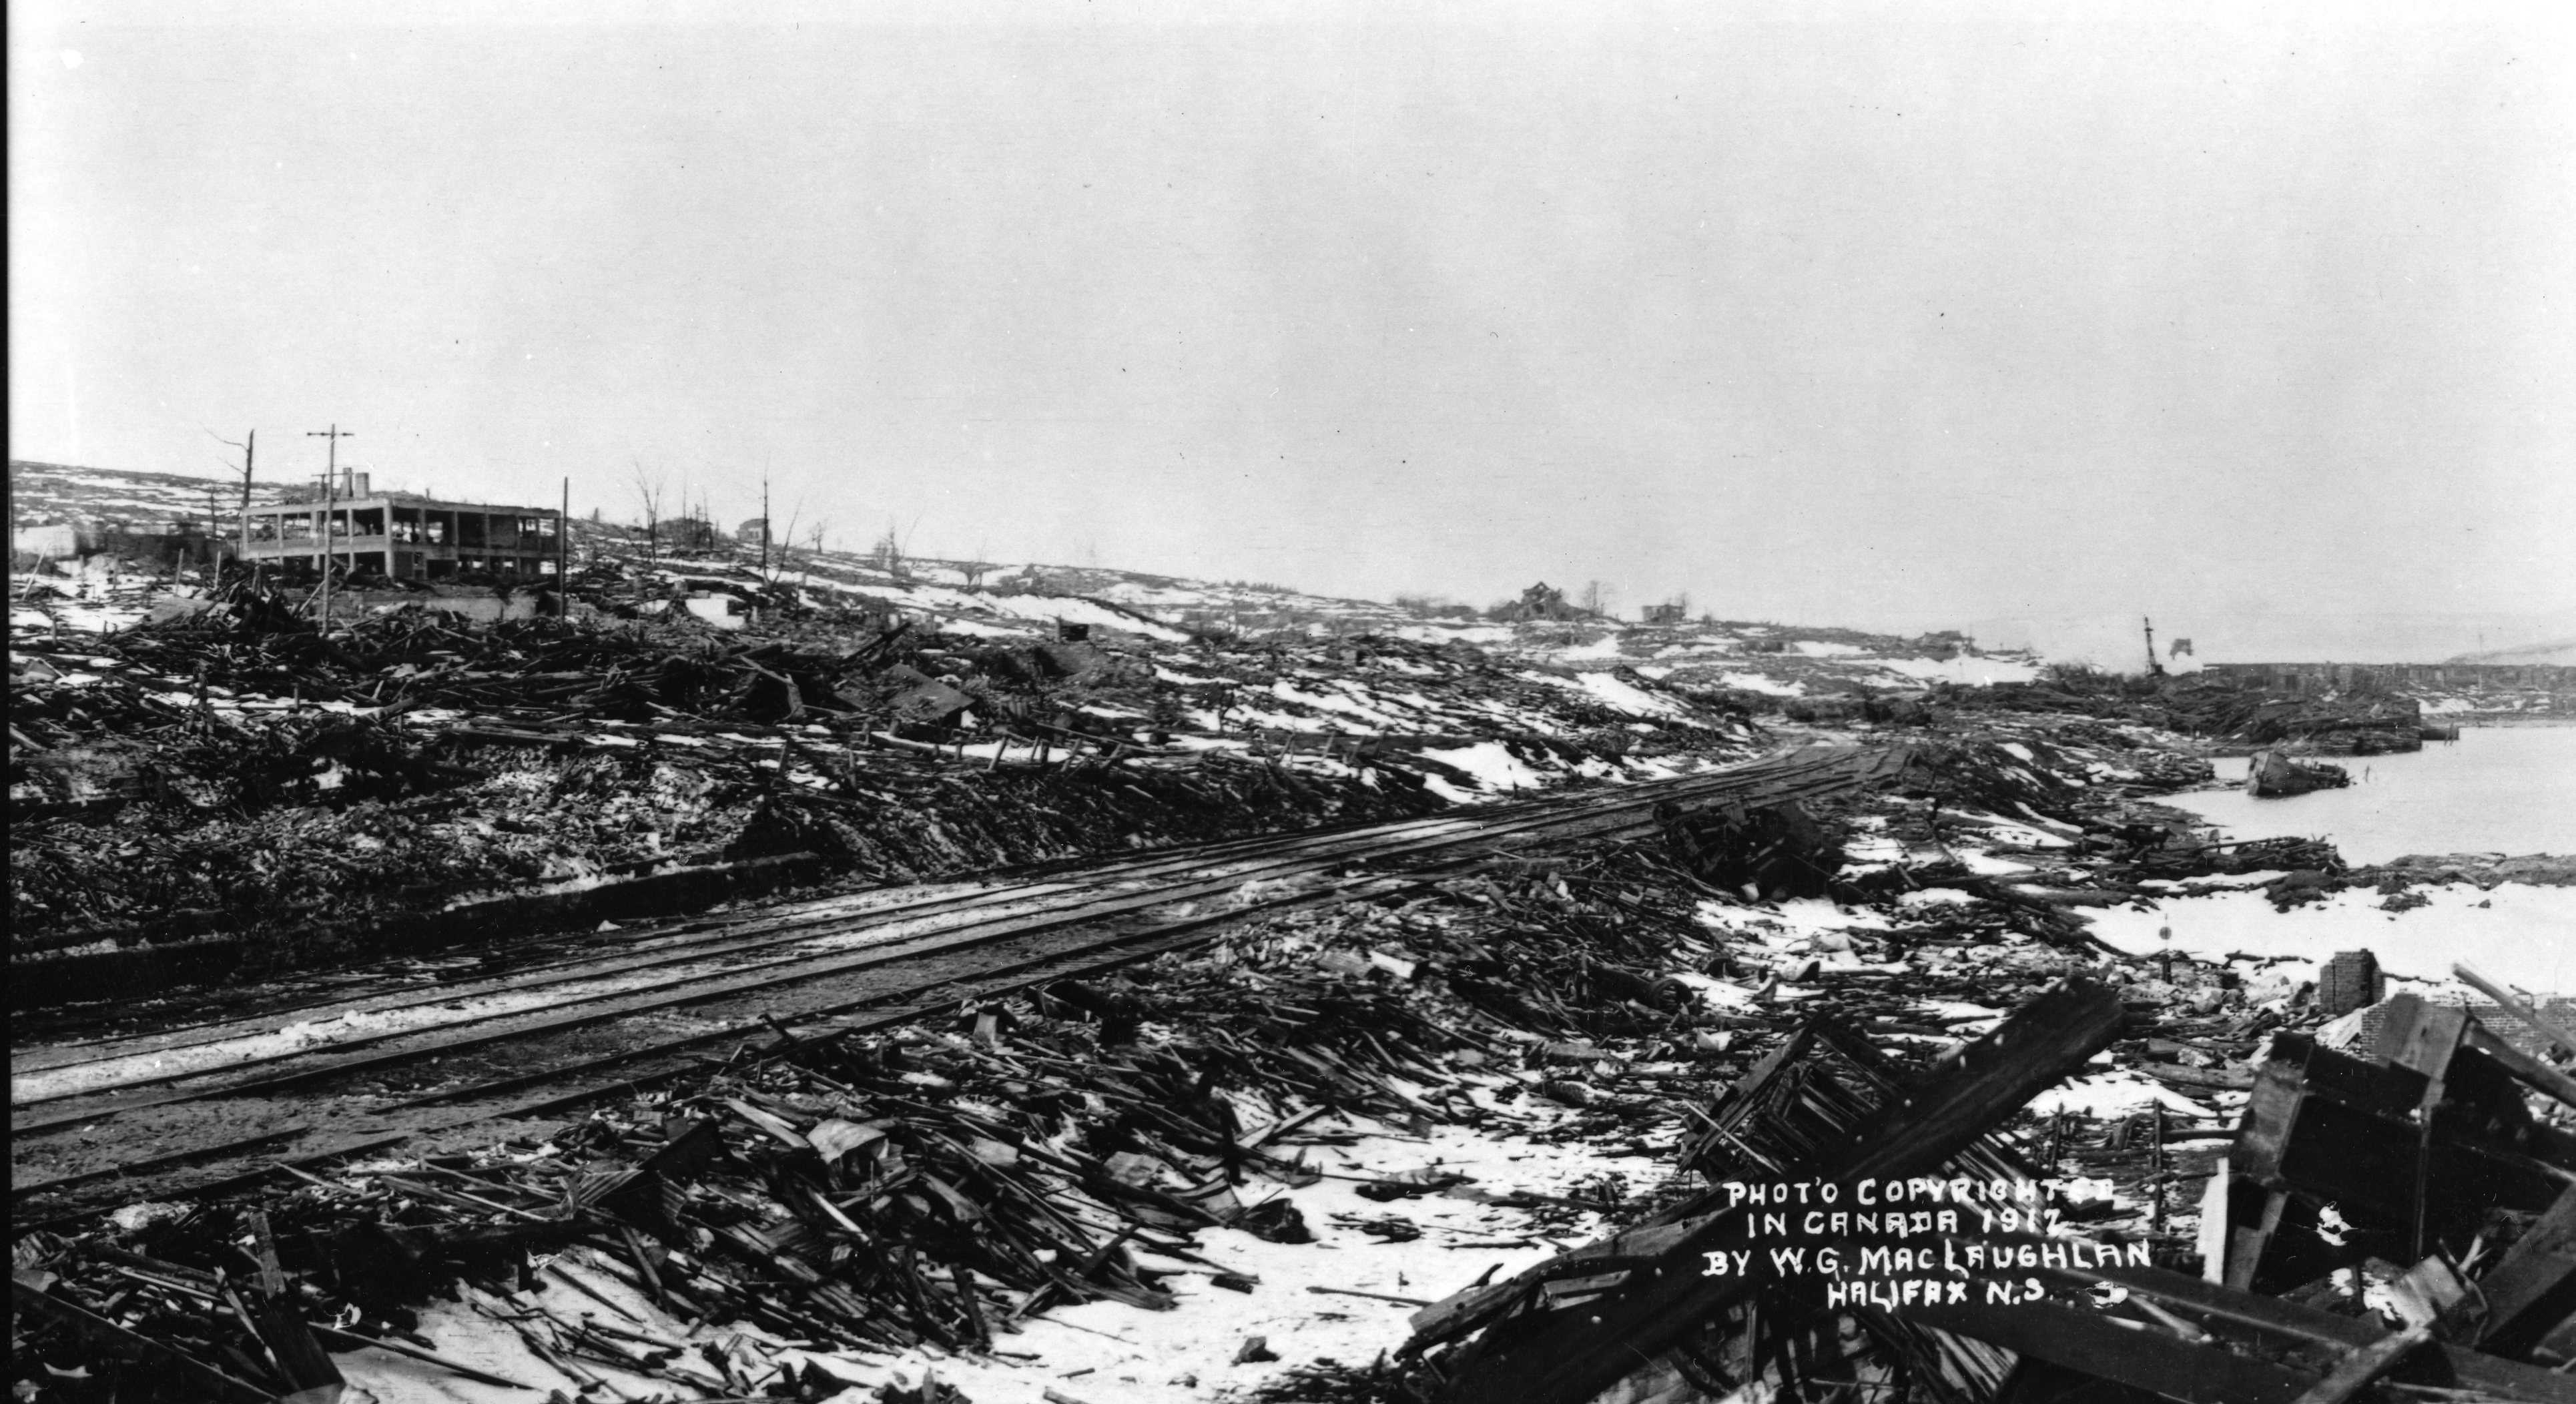 Photographie en noir et blanc – Les voies ferrées se prolongent au loin. On aperçoit un bâtiment soufflé; encore debout, il semble squelettique. Les décombres et les débris sont omniprésents. Les arbres sont calcinés et brisés.